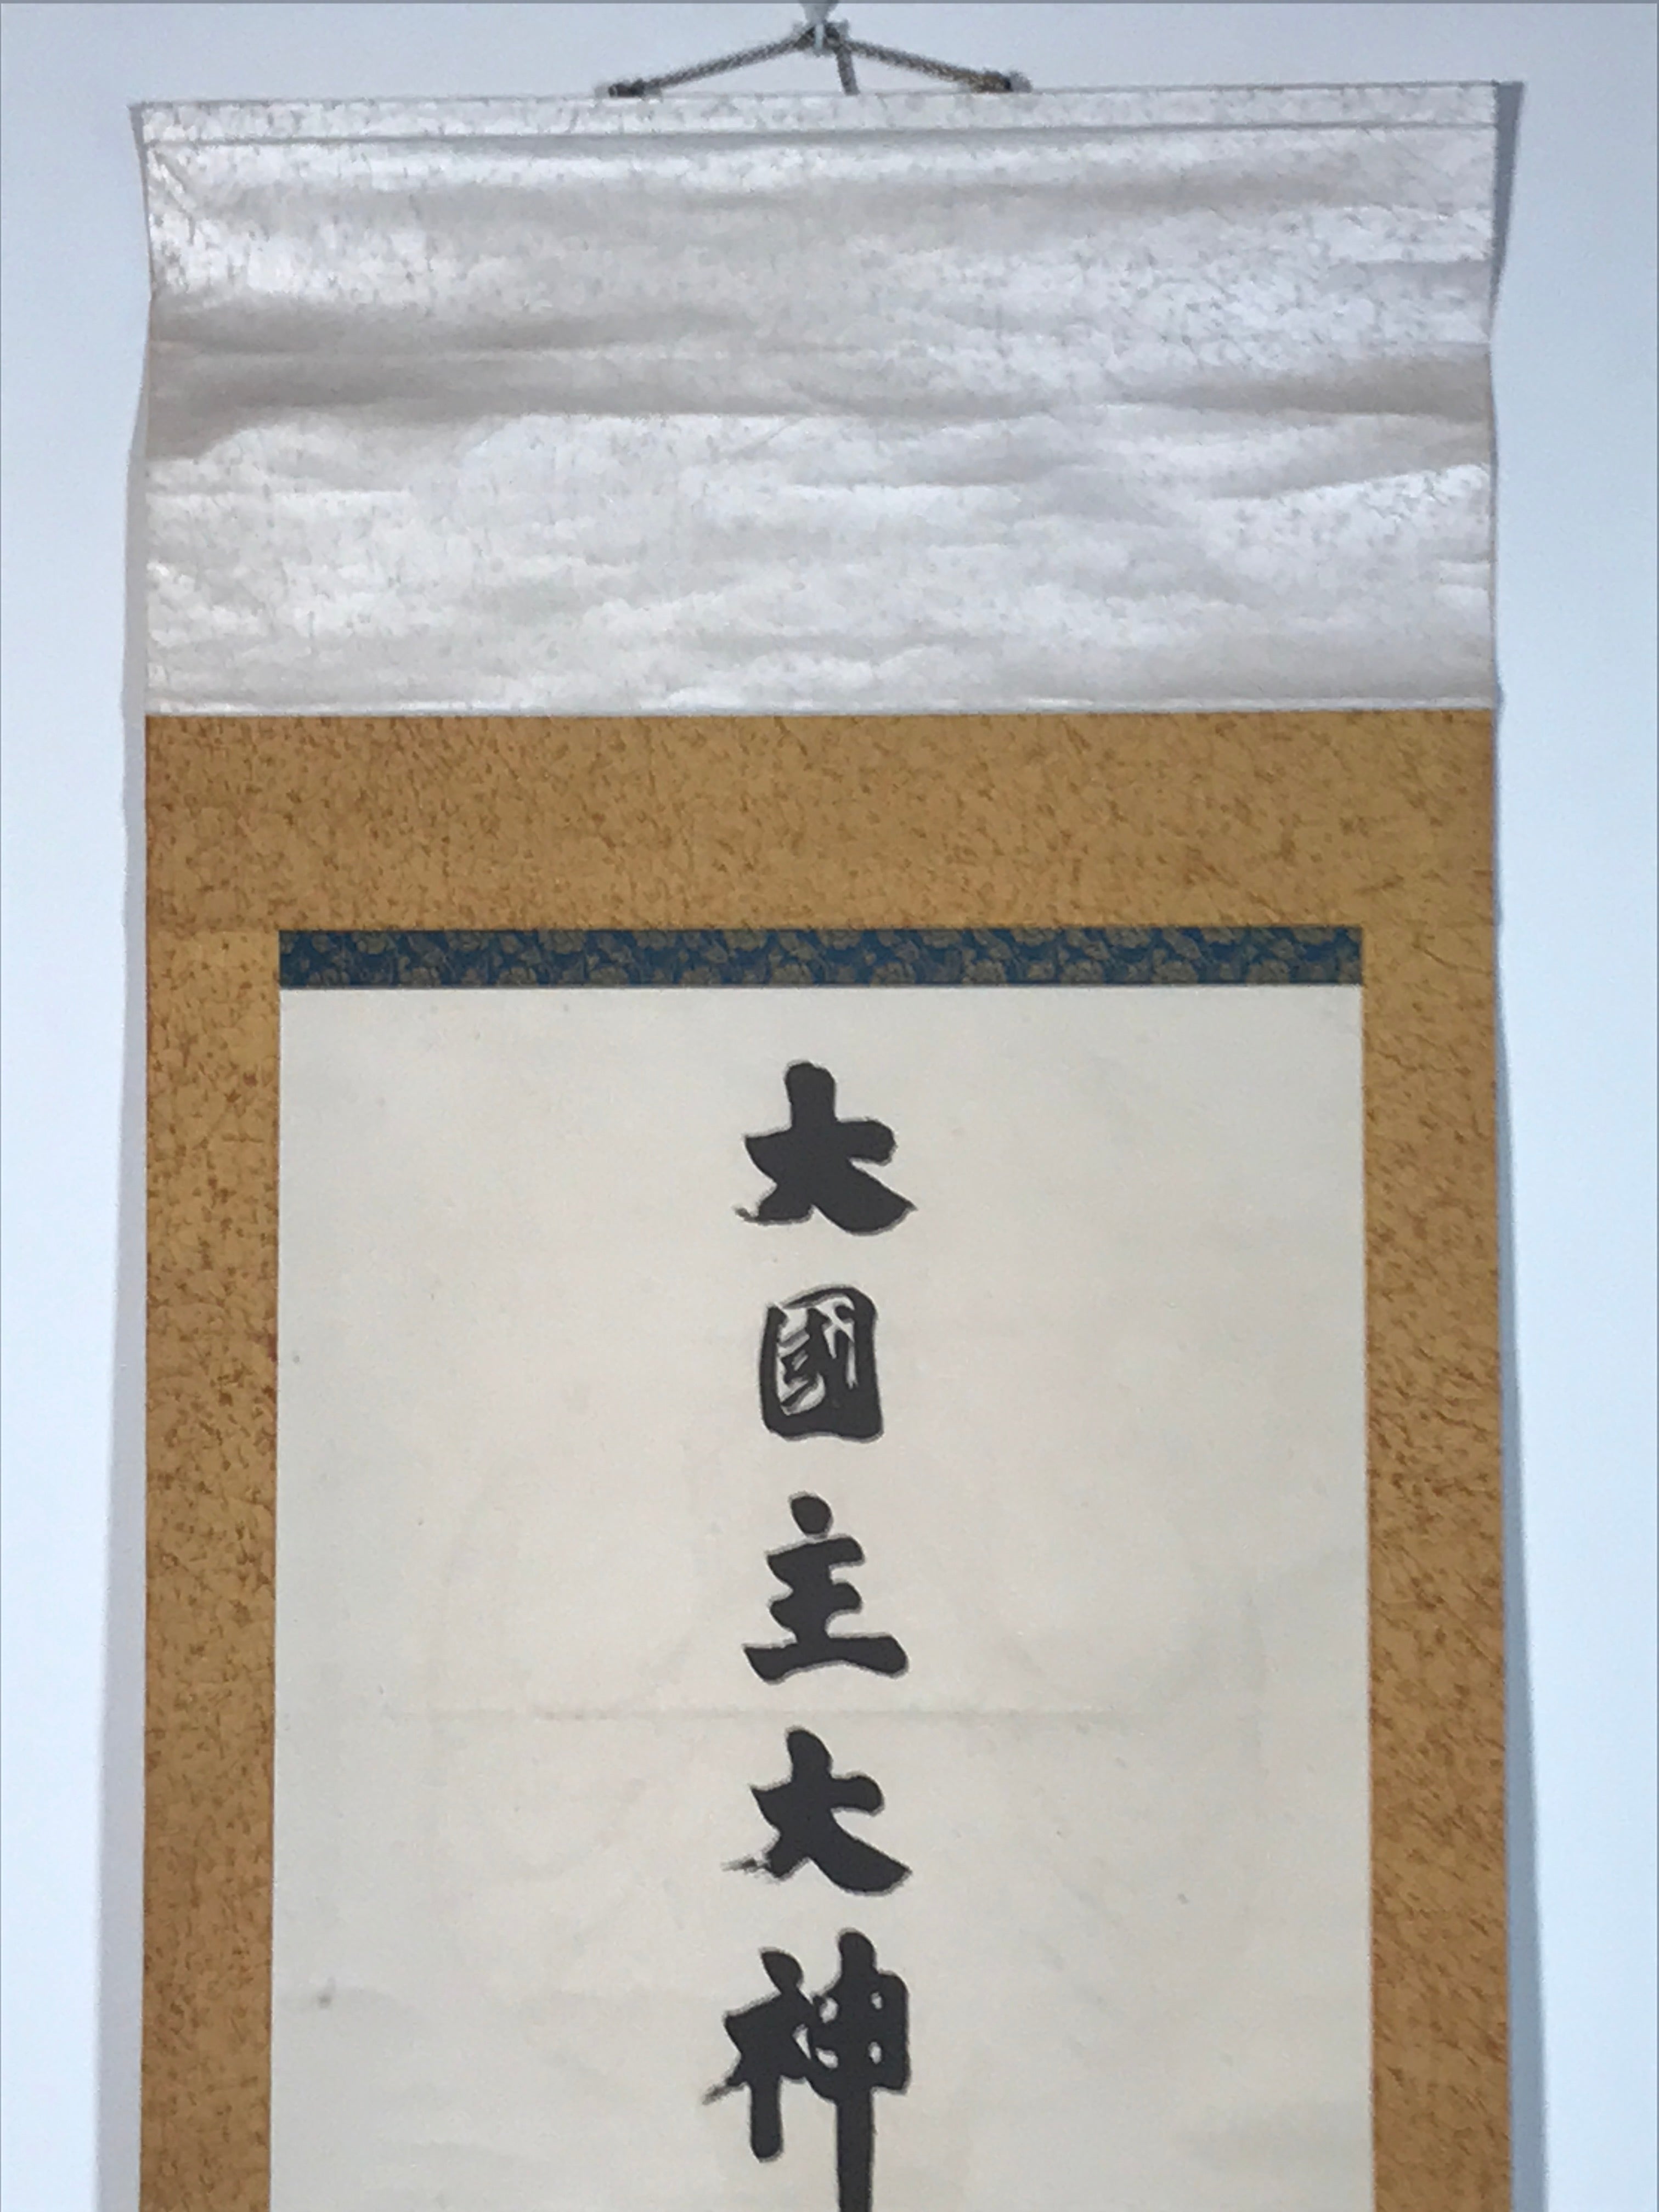 Japanese Hanging Scroll Okuni-Nushi God Izumo Picture Kakejiku Kakemono SC800